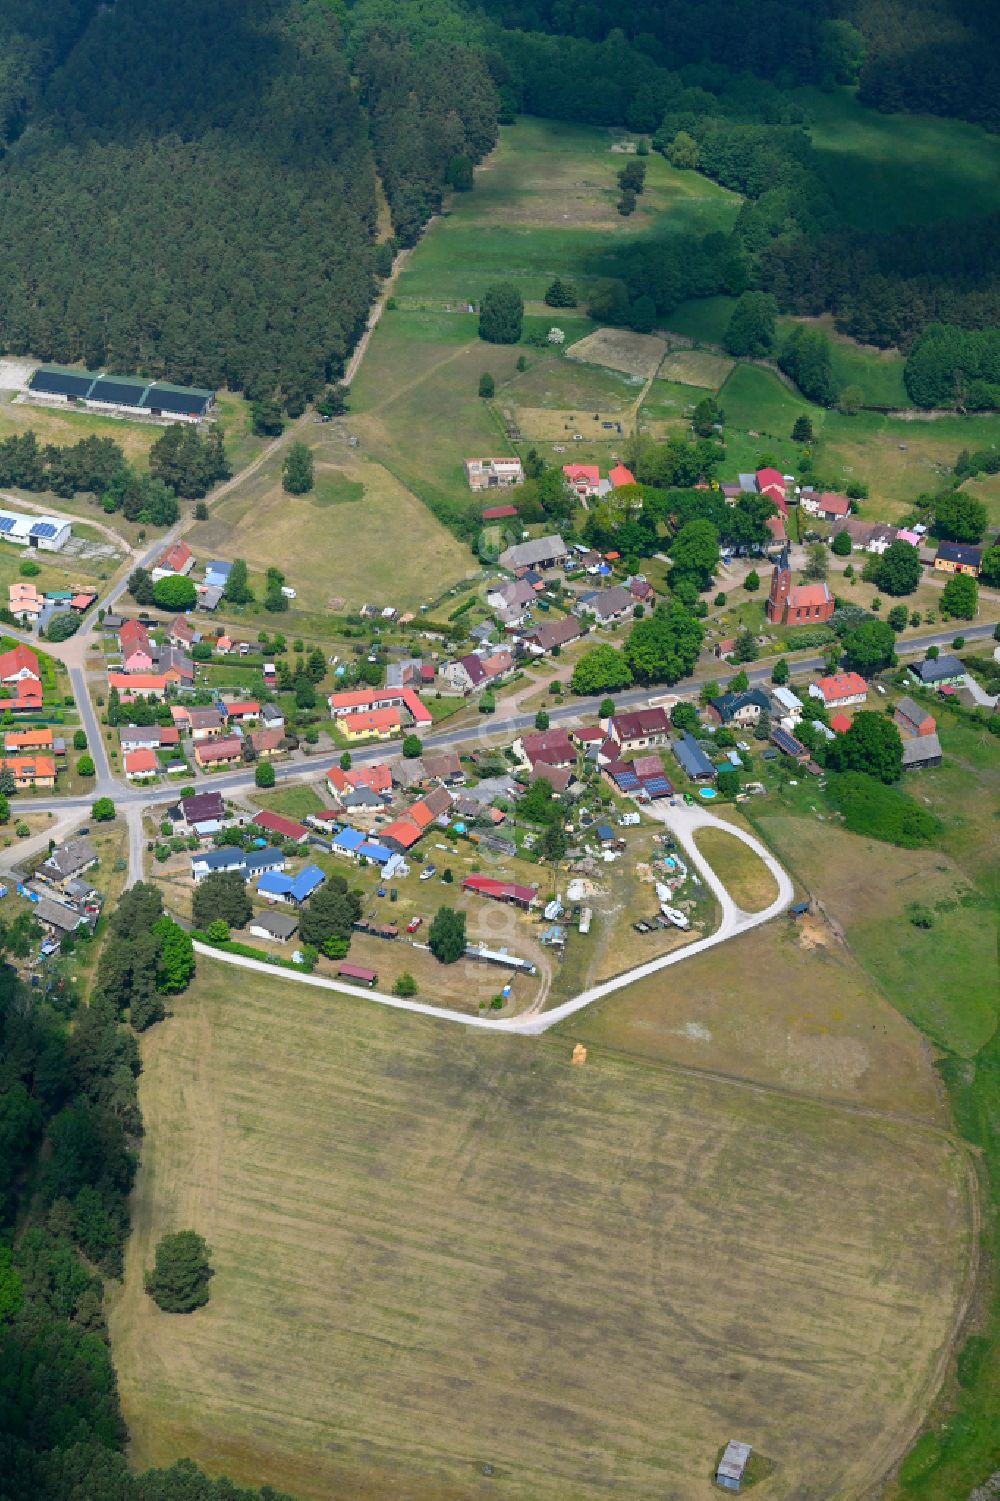 Zechow von oben - Dorf - Ansicht am Rande von Waldgebieten in Zechow im Bundesland Brandenburg, Deutschland